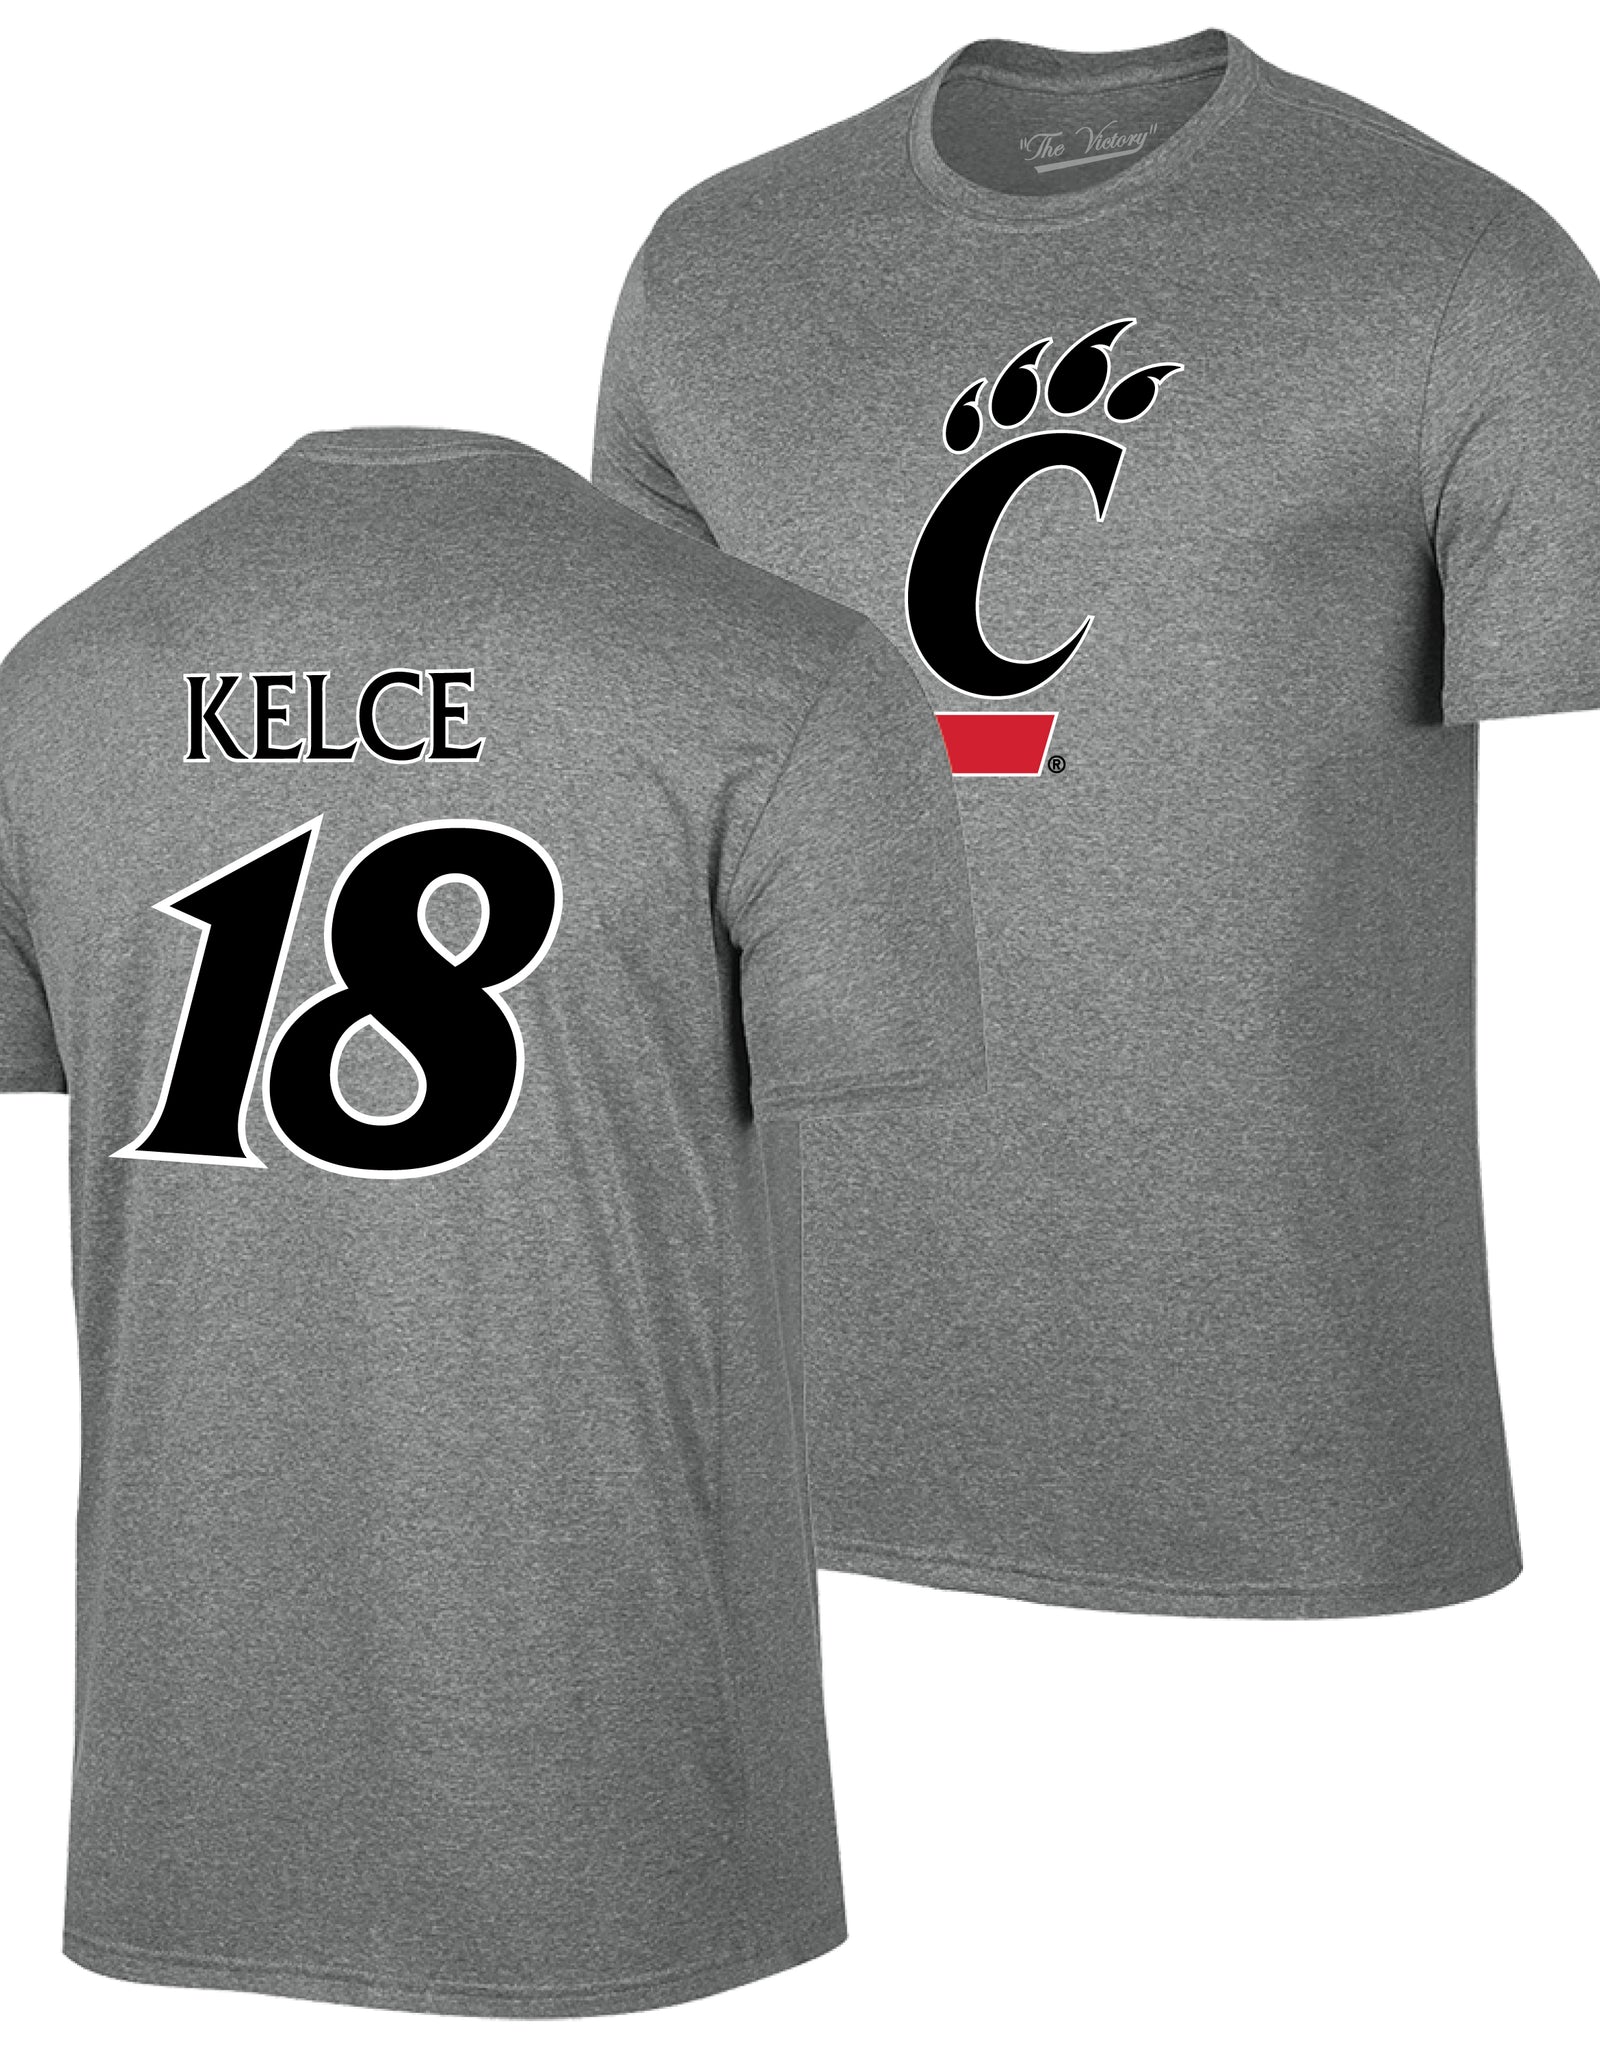 Travis Kelce Cincinnati Bearcats Tri-Blend Tee